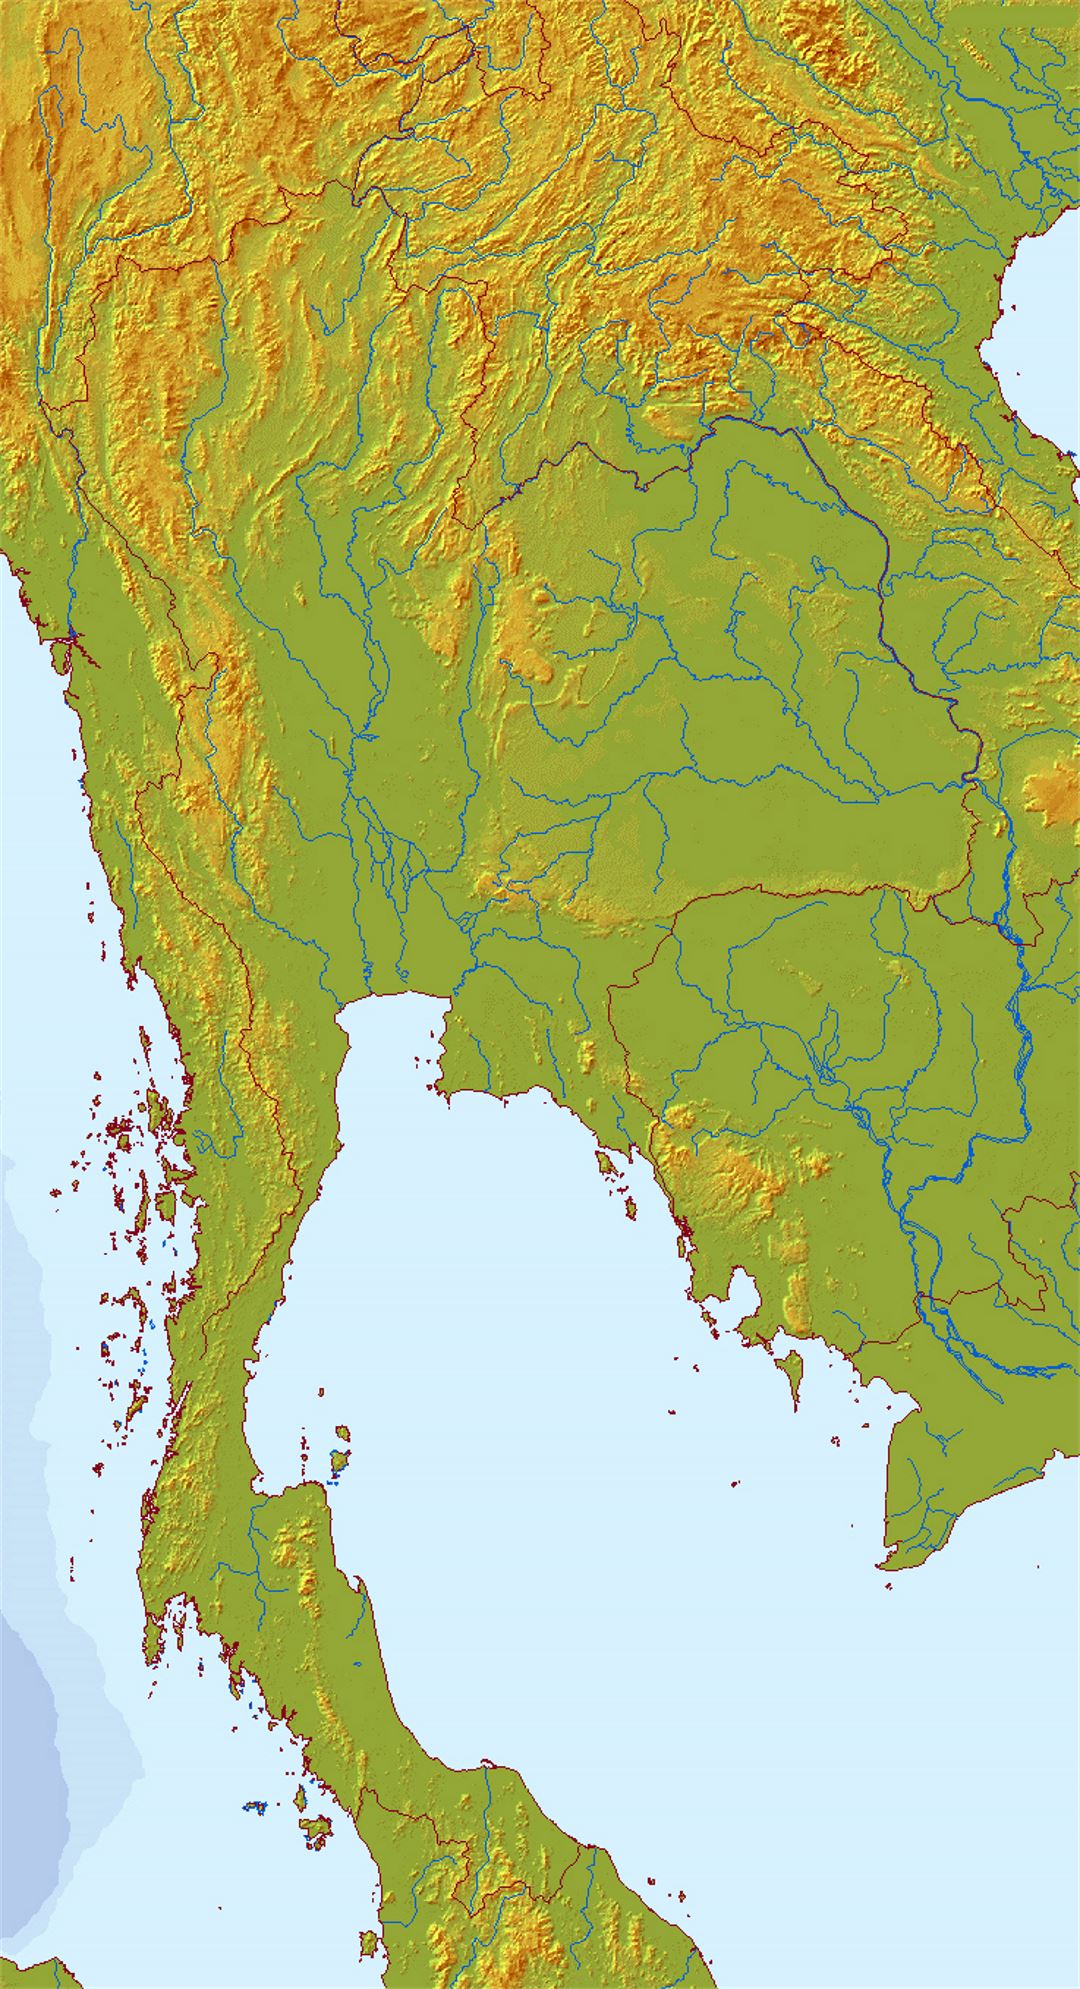 Mapa en relieve de Tailandia